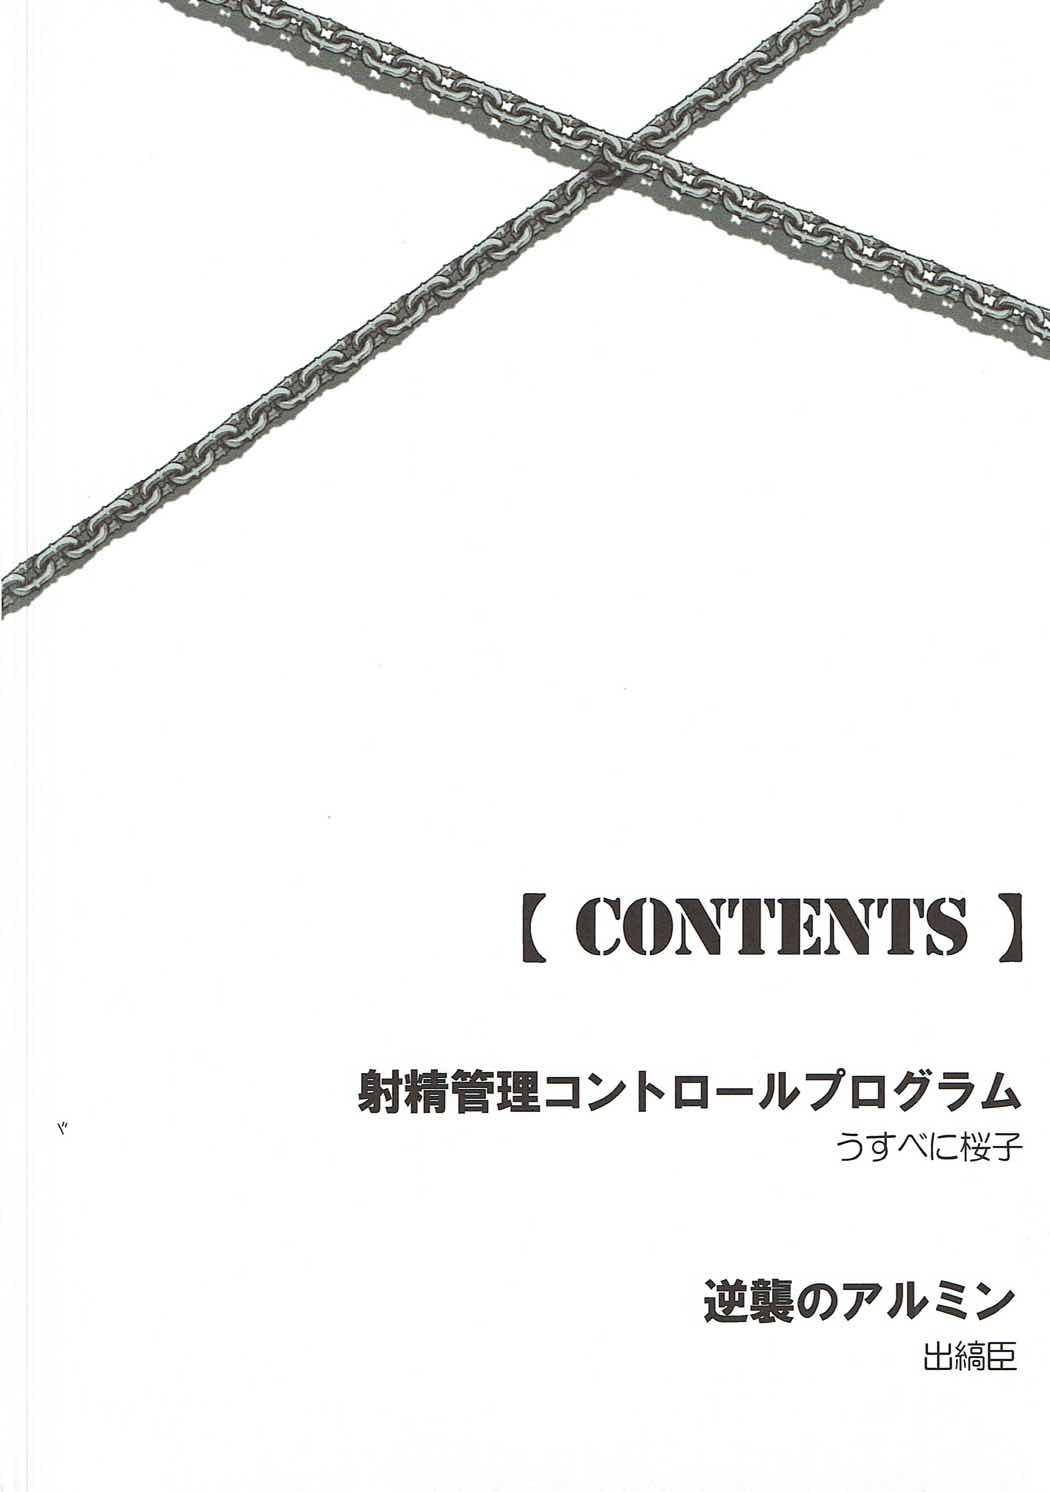 Couples Shasei Kanri Control Program - Shingeki no kyojin Juggs - Page 3